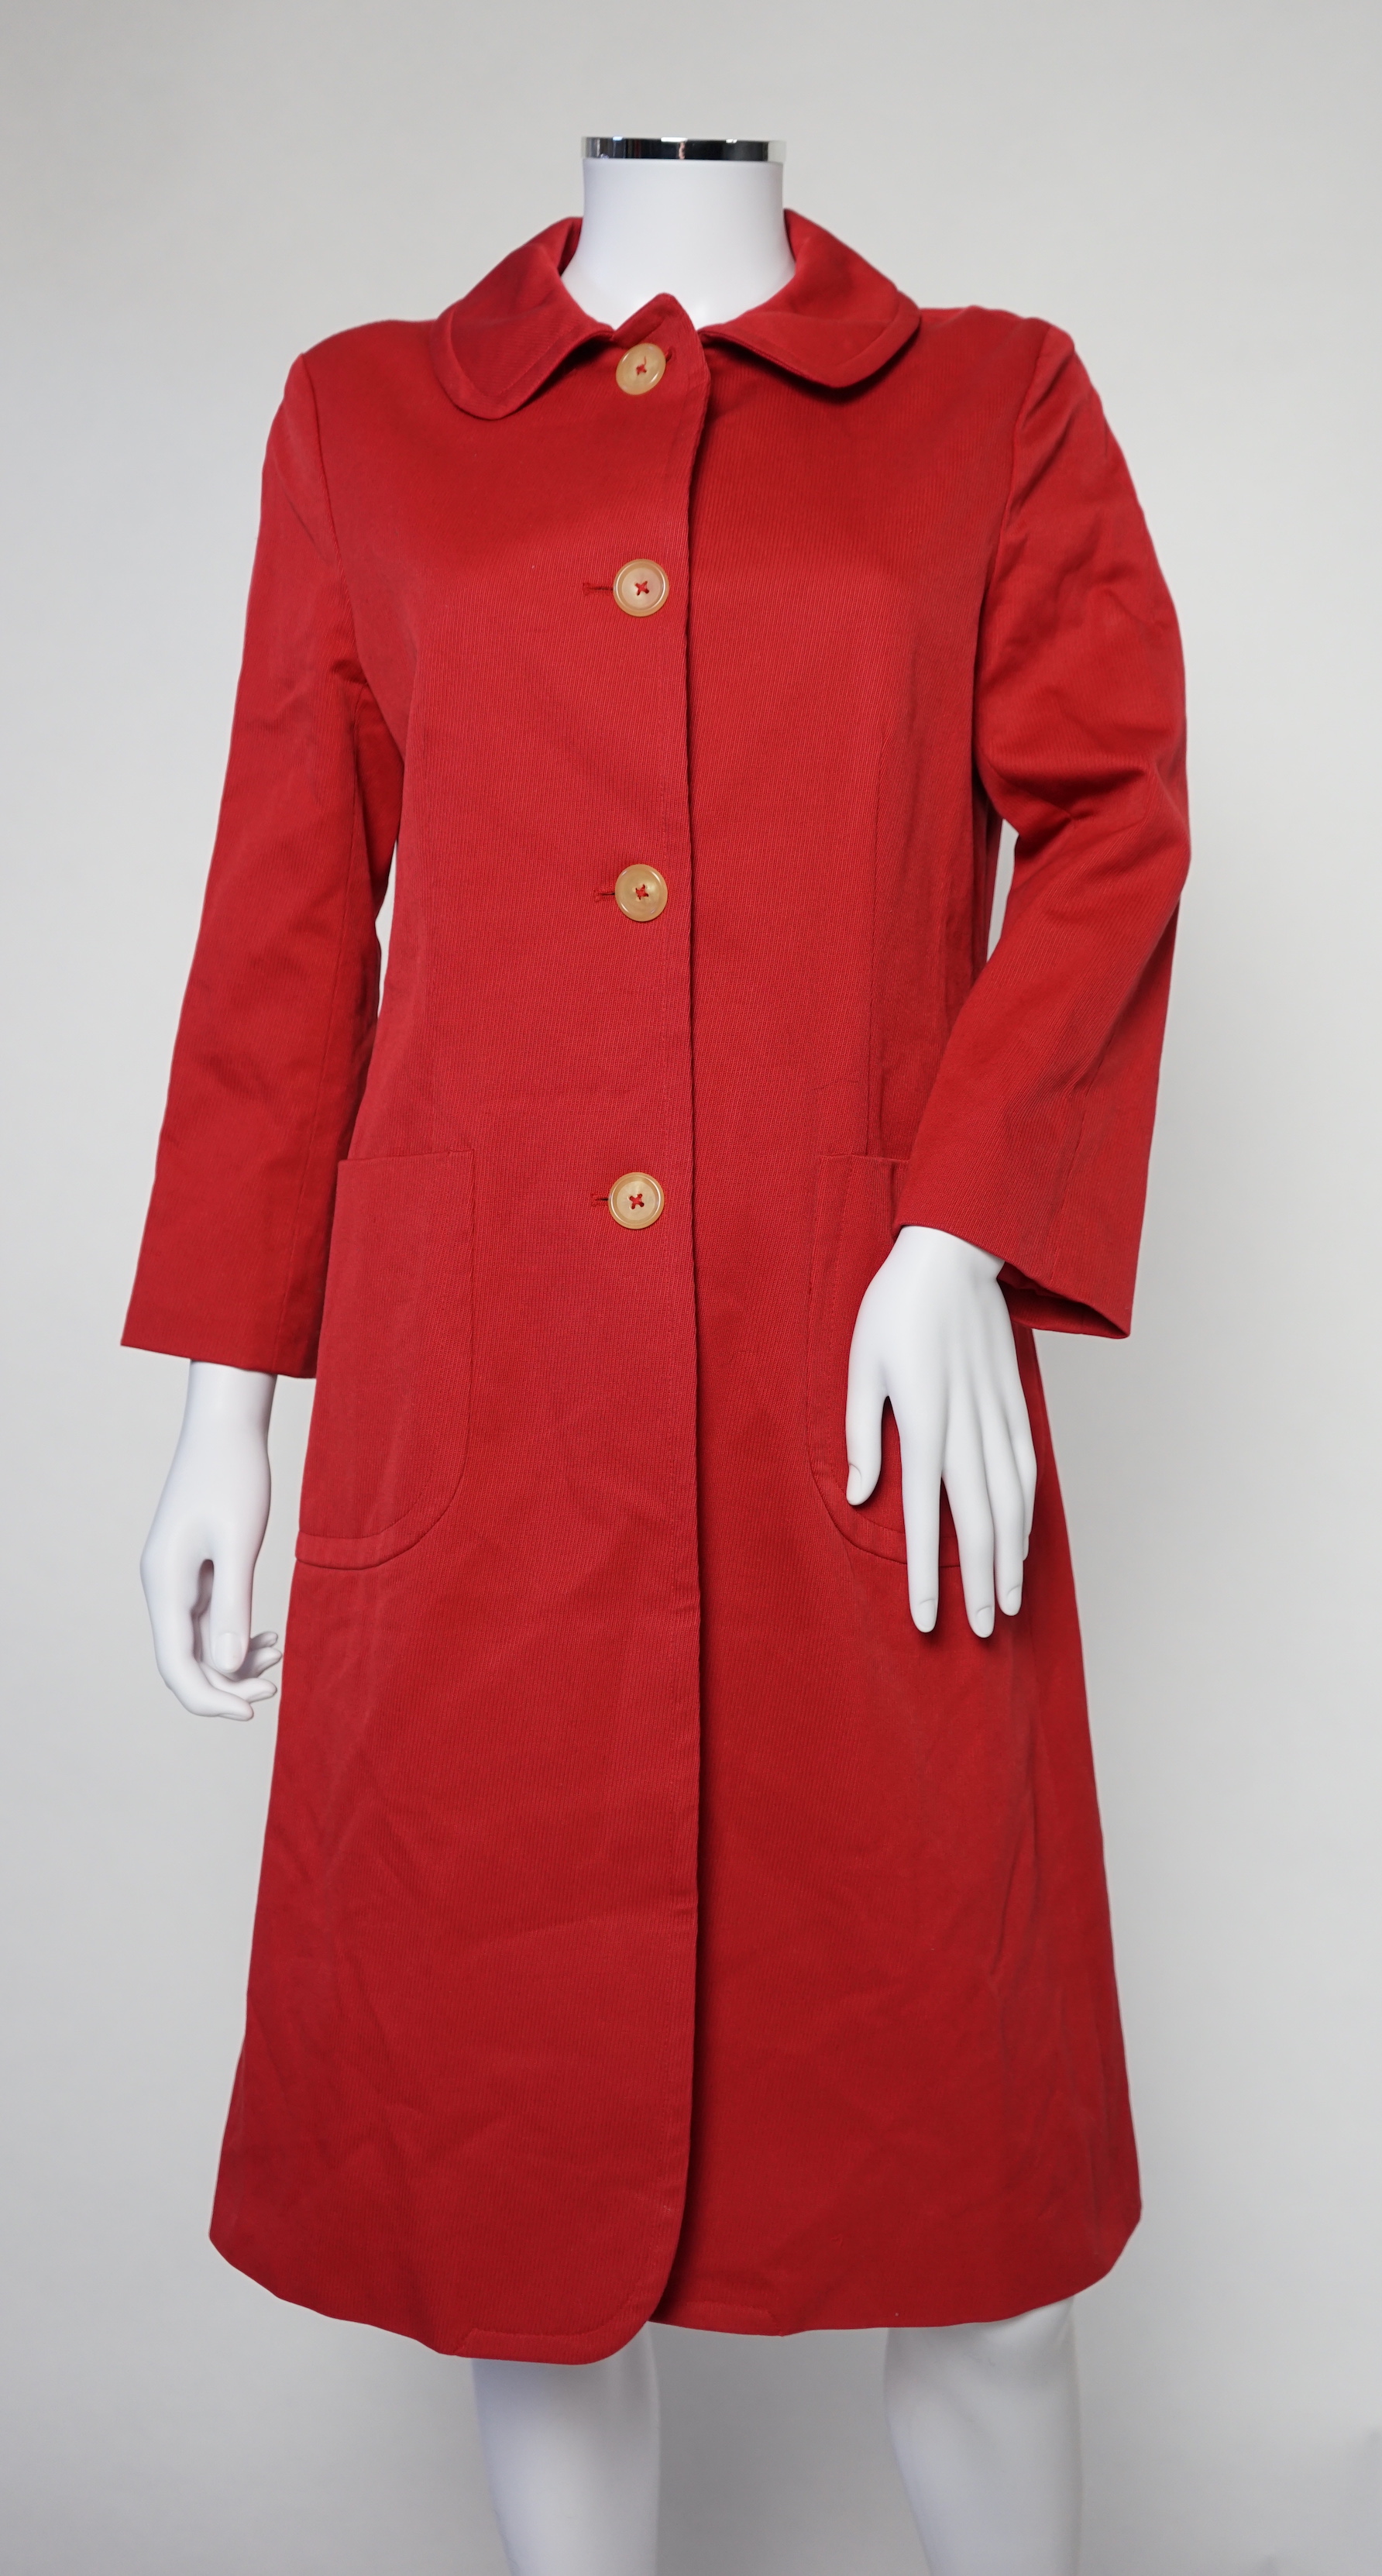 A DKNY red lady's coat and a DKNY satin jacket, coat size 6, jacket size 8